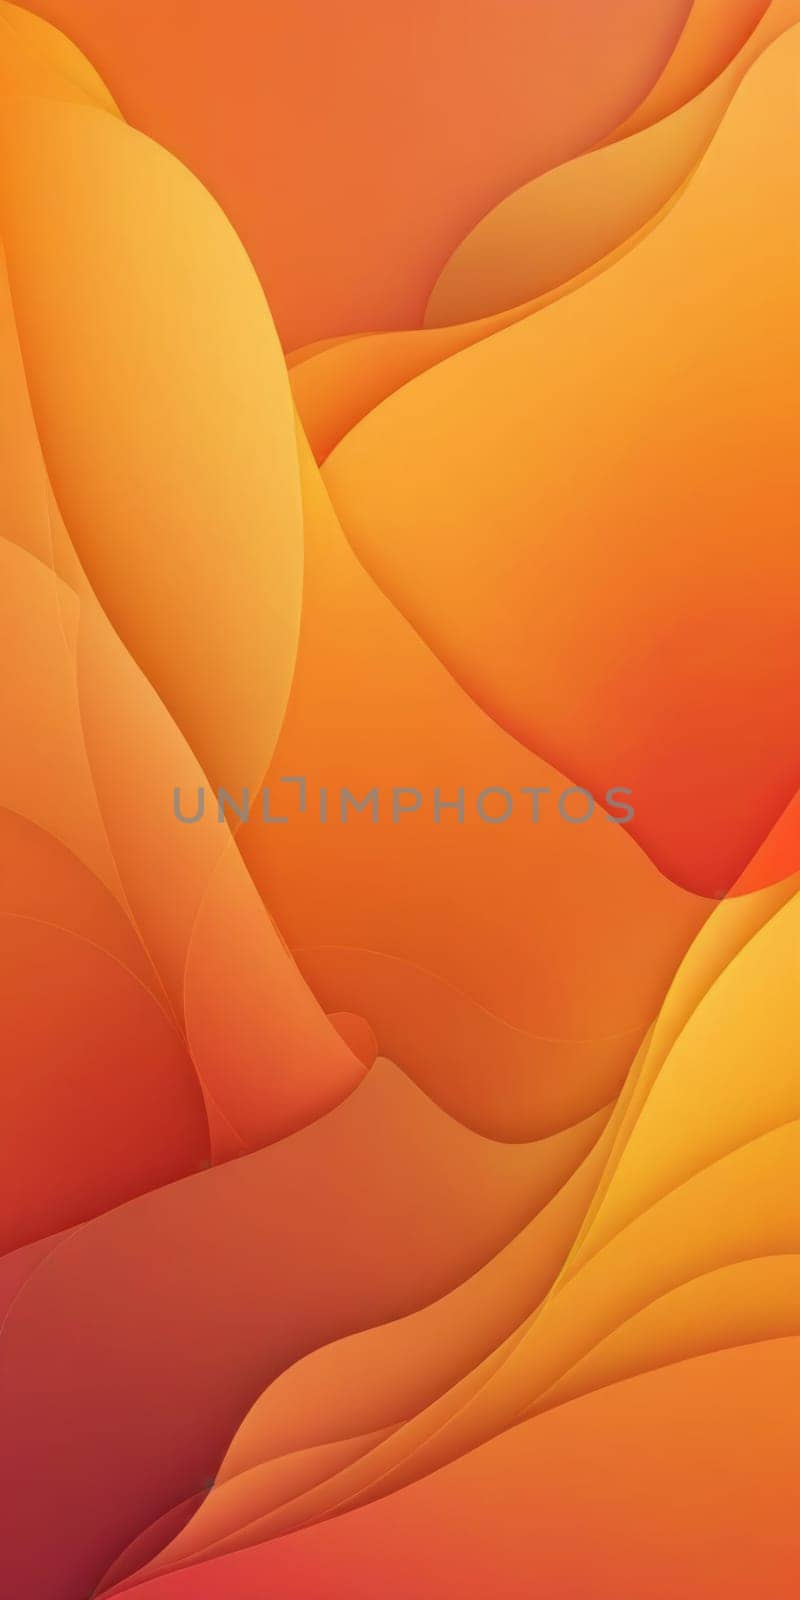 Fractal Shapes in Orange Moccasin by nkotlyar